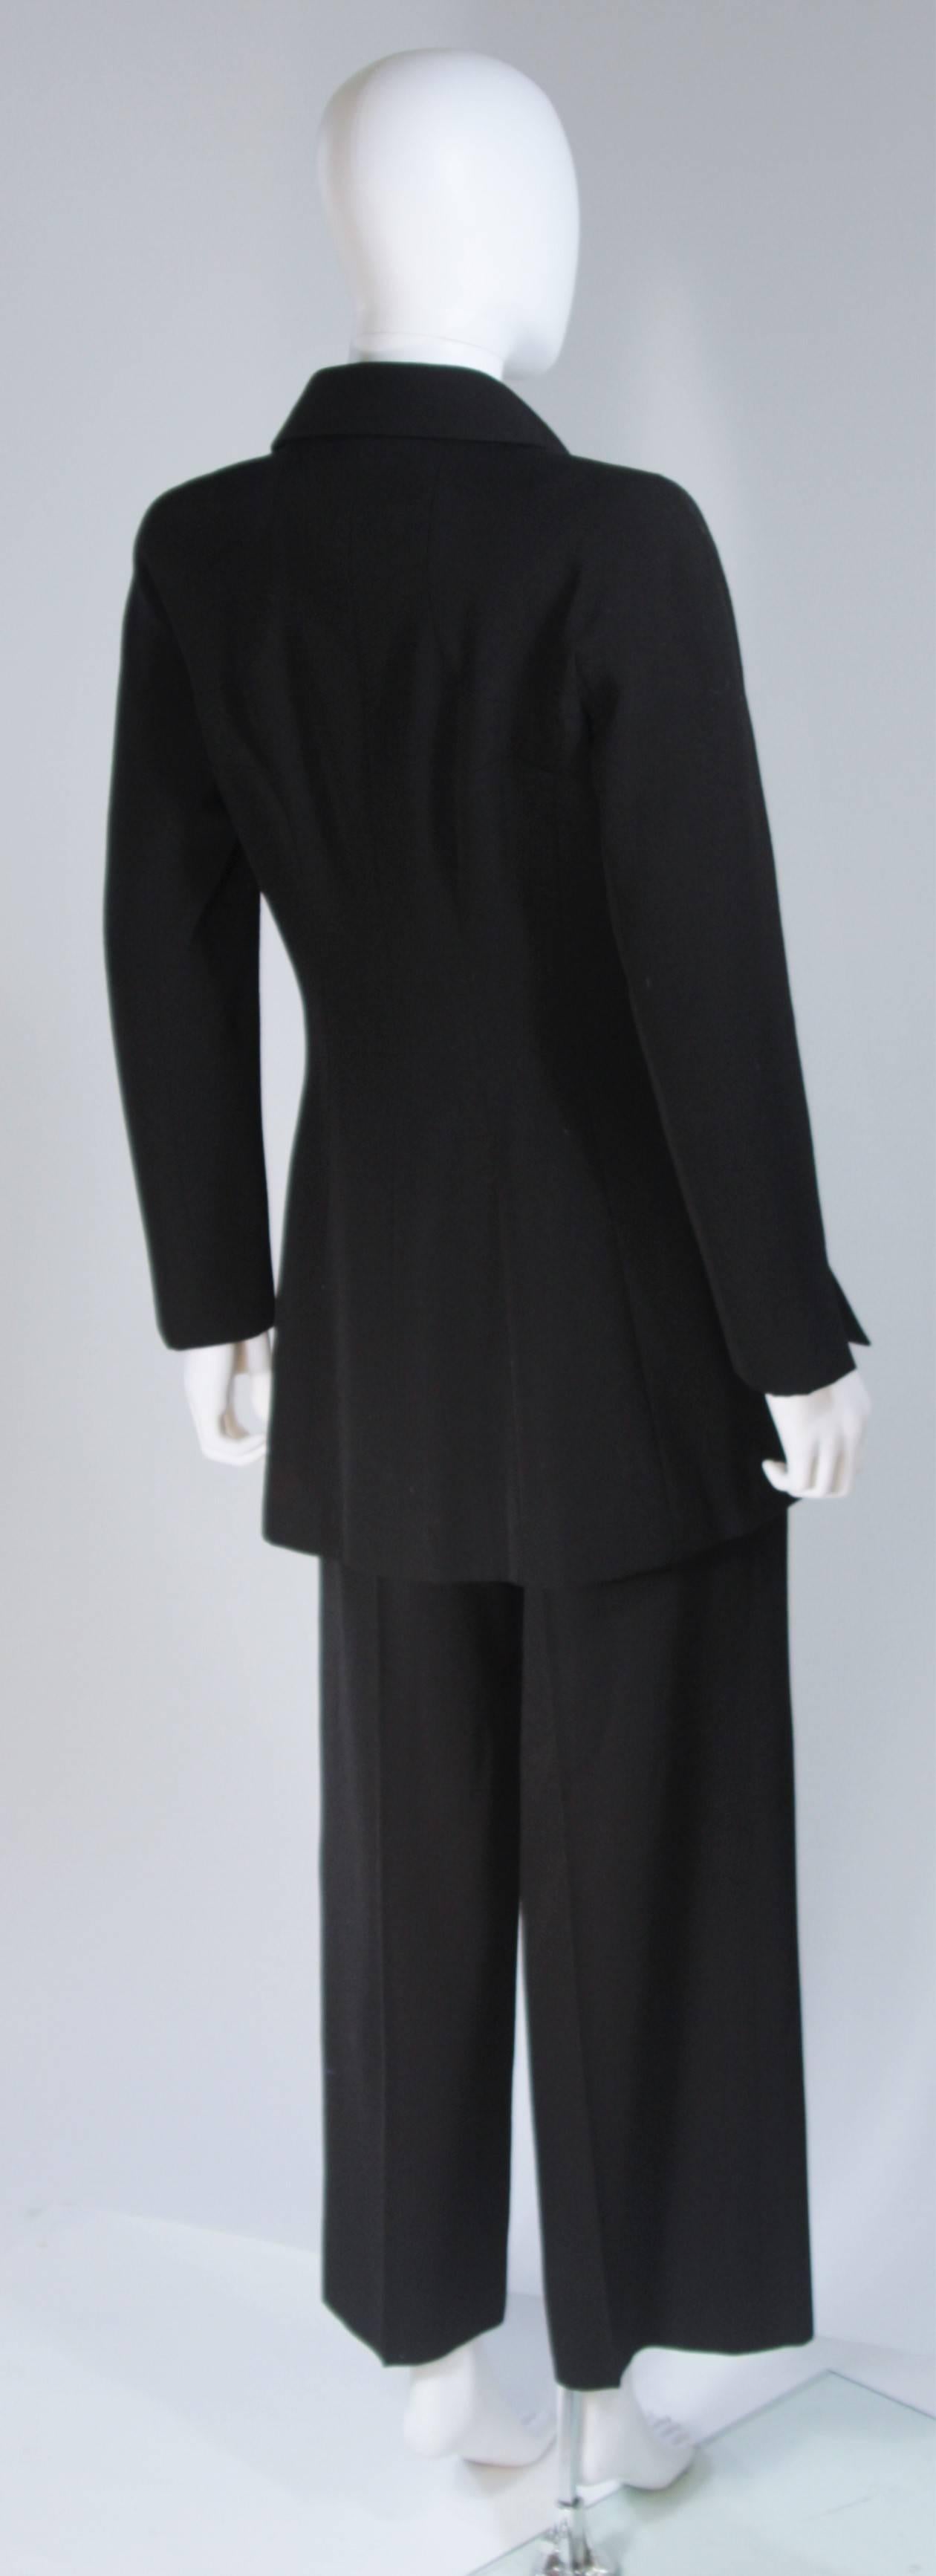 CHANEL Black Pant Suit Size 40 1